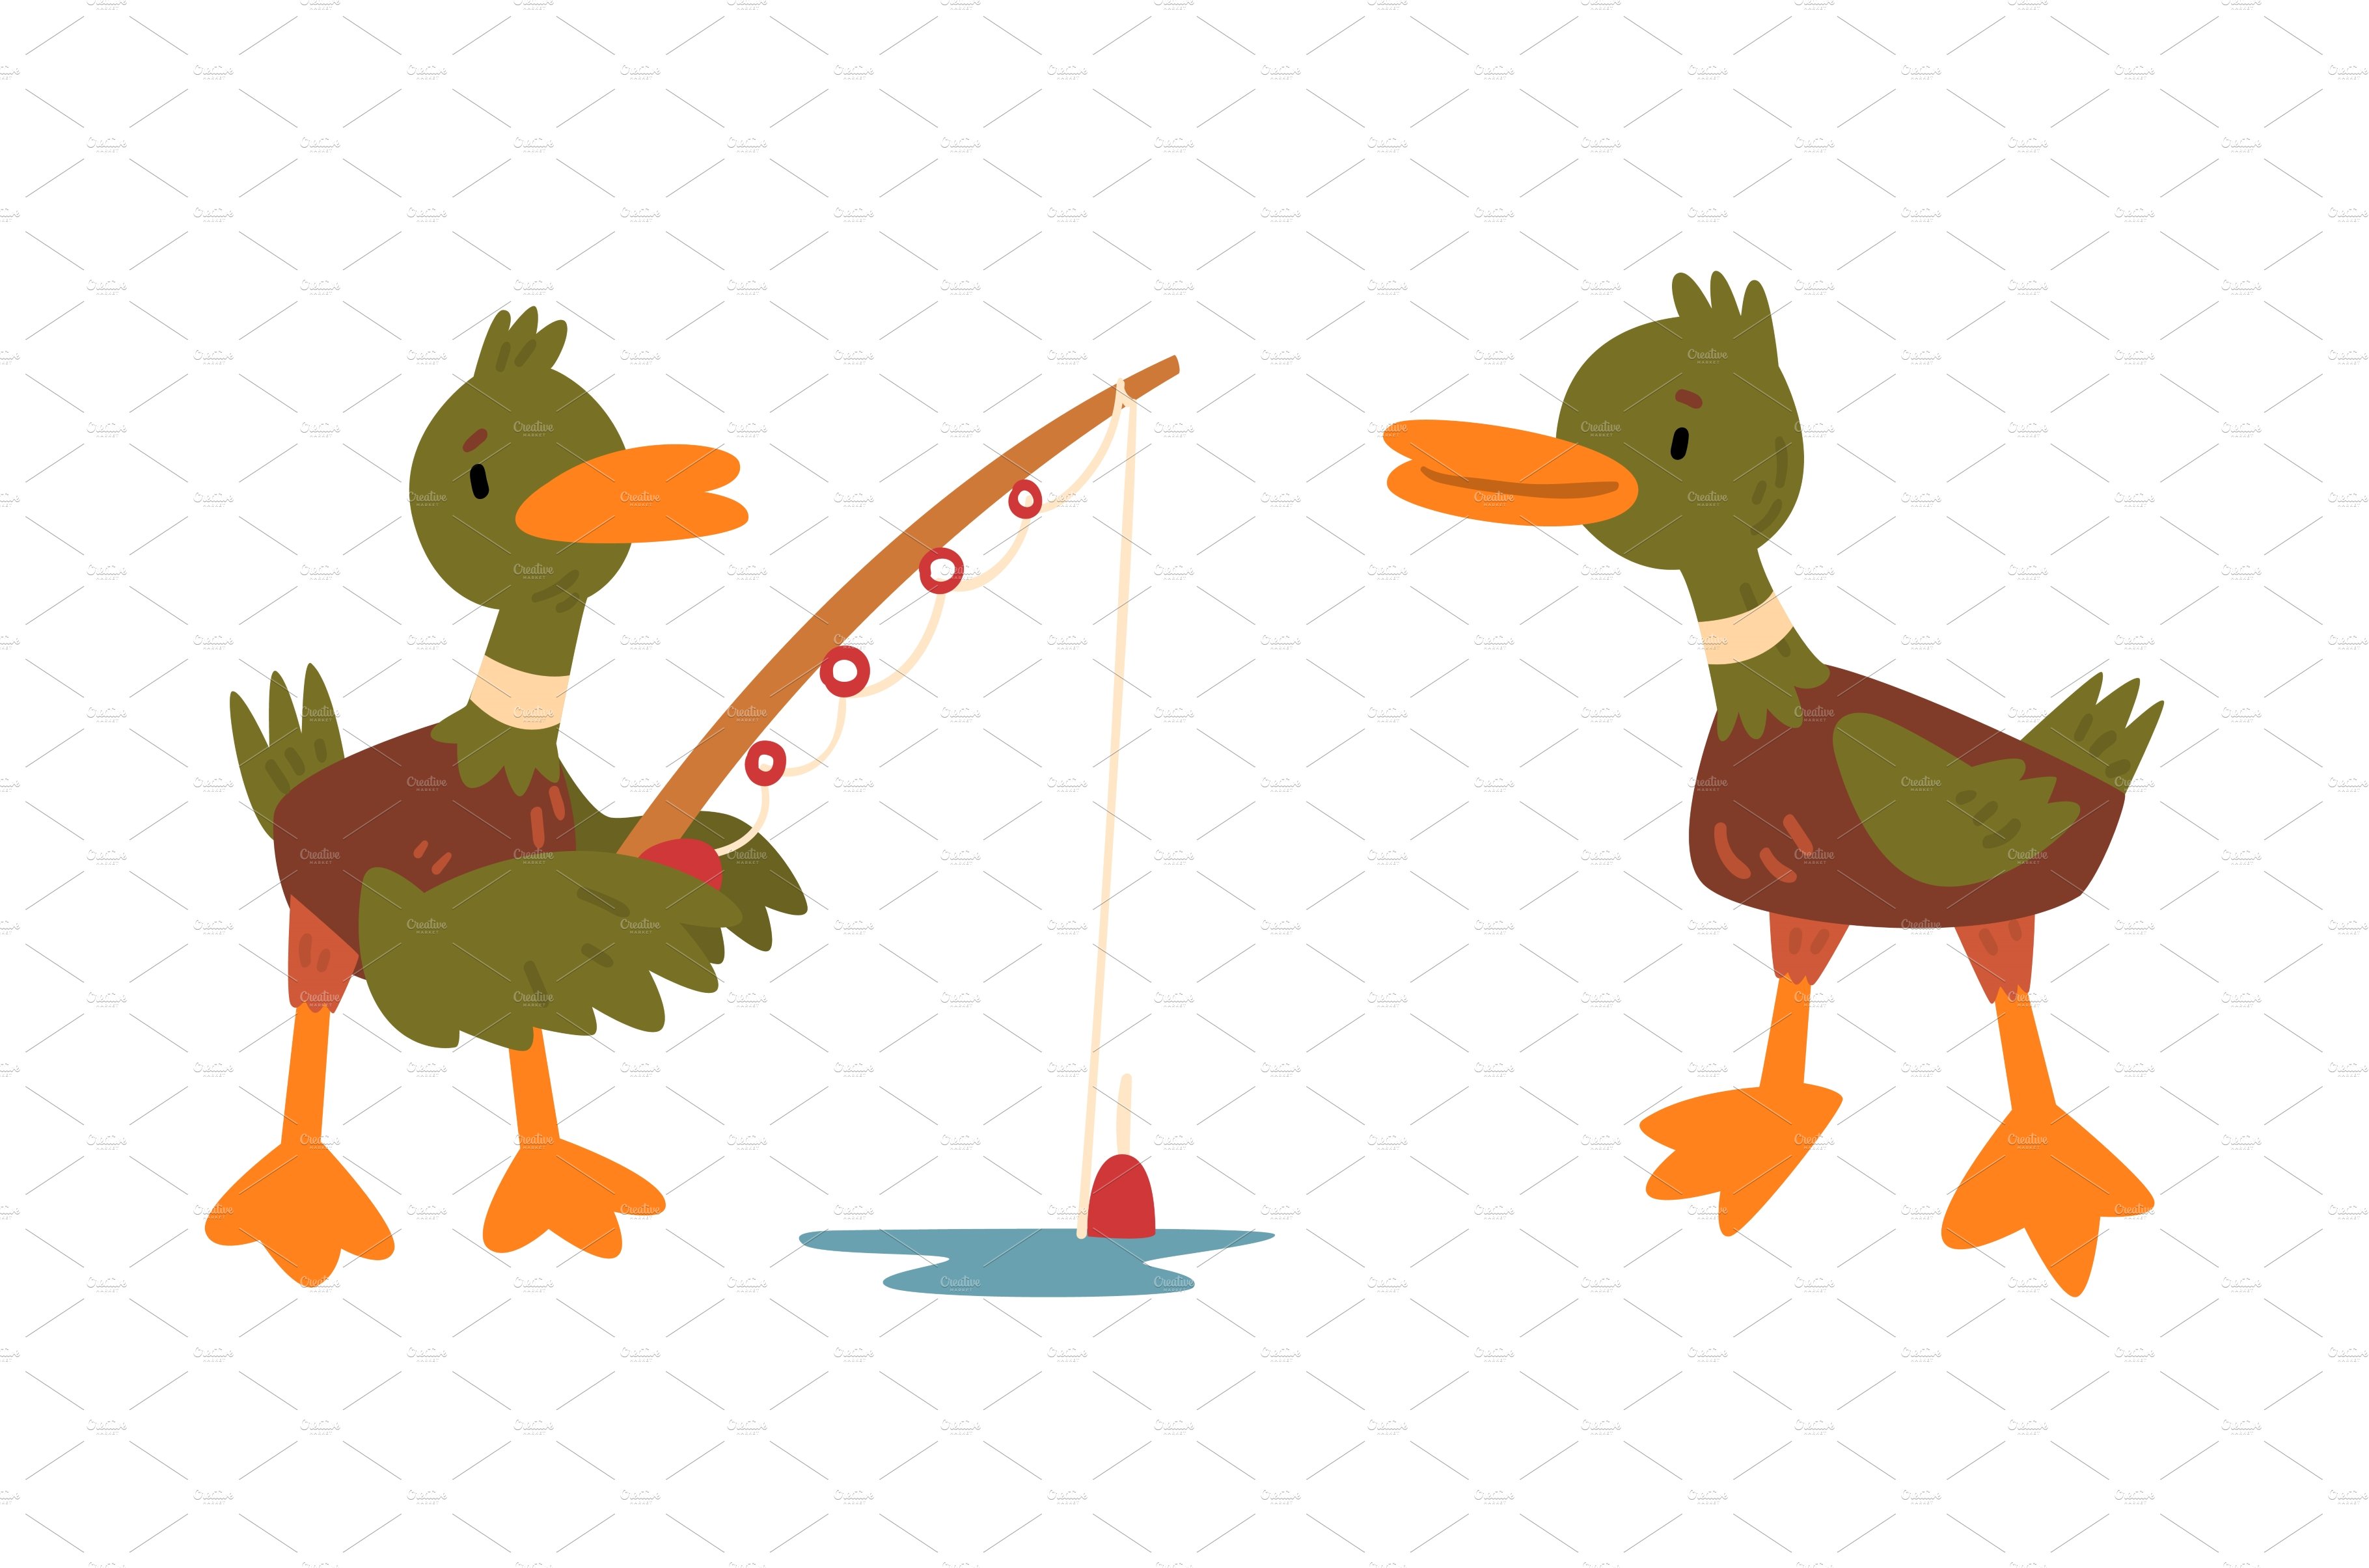 Male Mallard Duck with Orange Bill cover image.